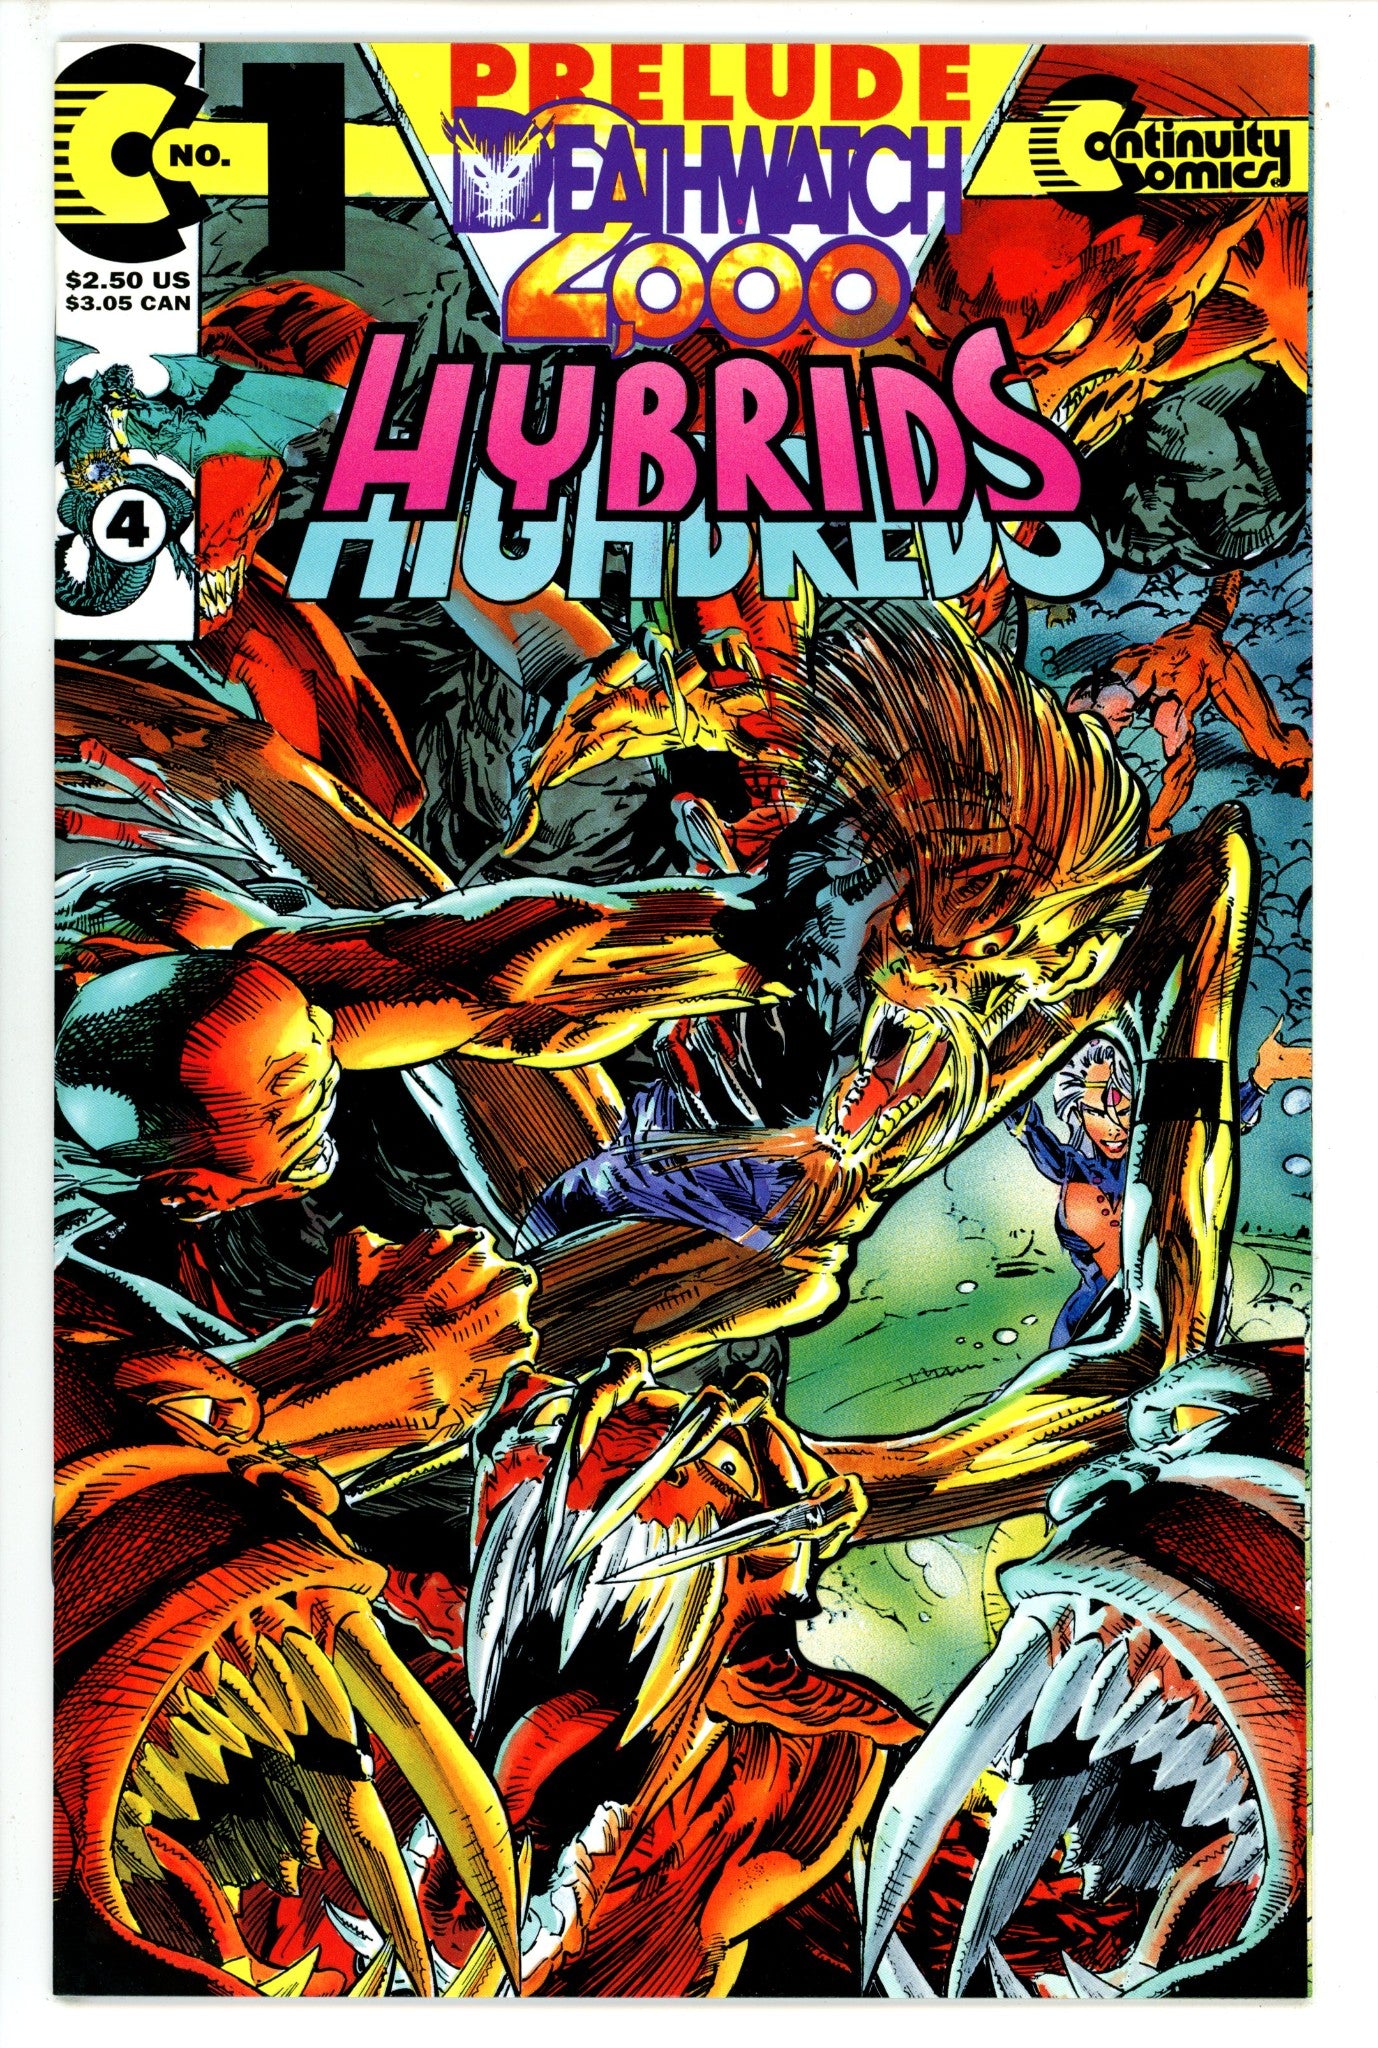 Hybrids: Deathwatch 2000 1 (1993)